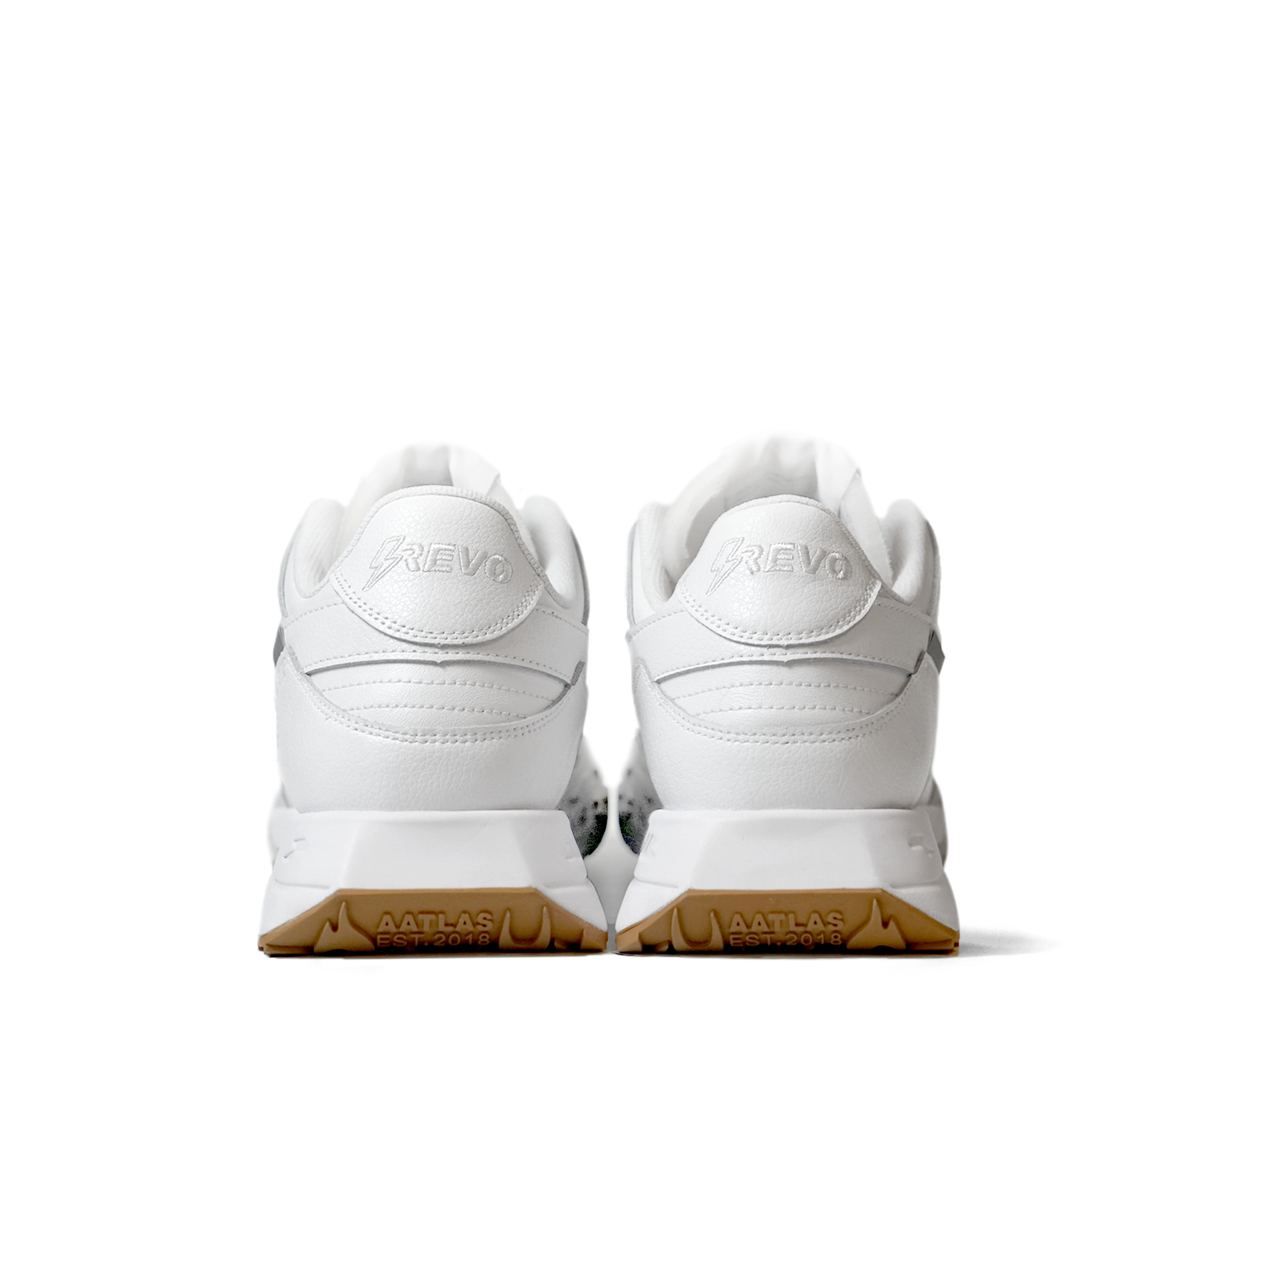  [CHÍNH HÃNG] Giày Sneaker Revo Gen 1 Low - White 